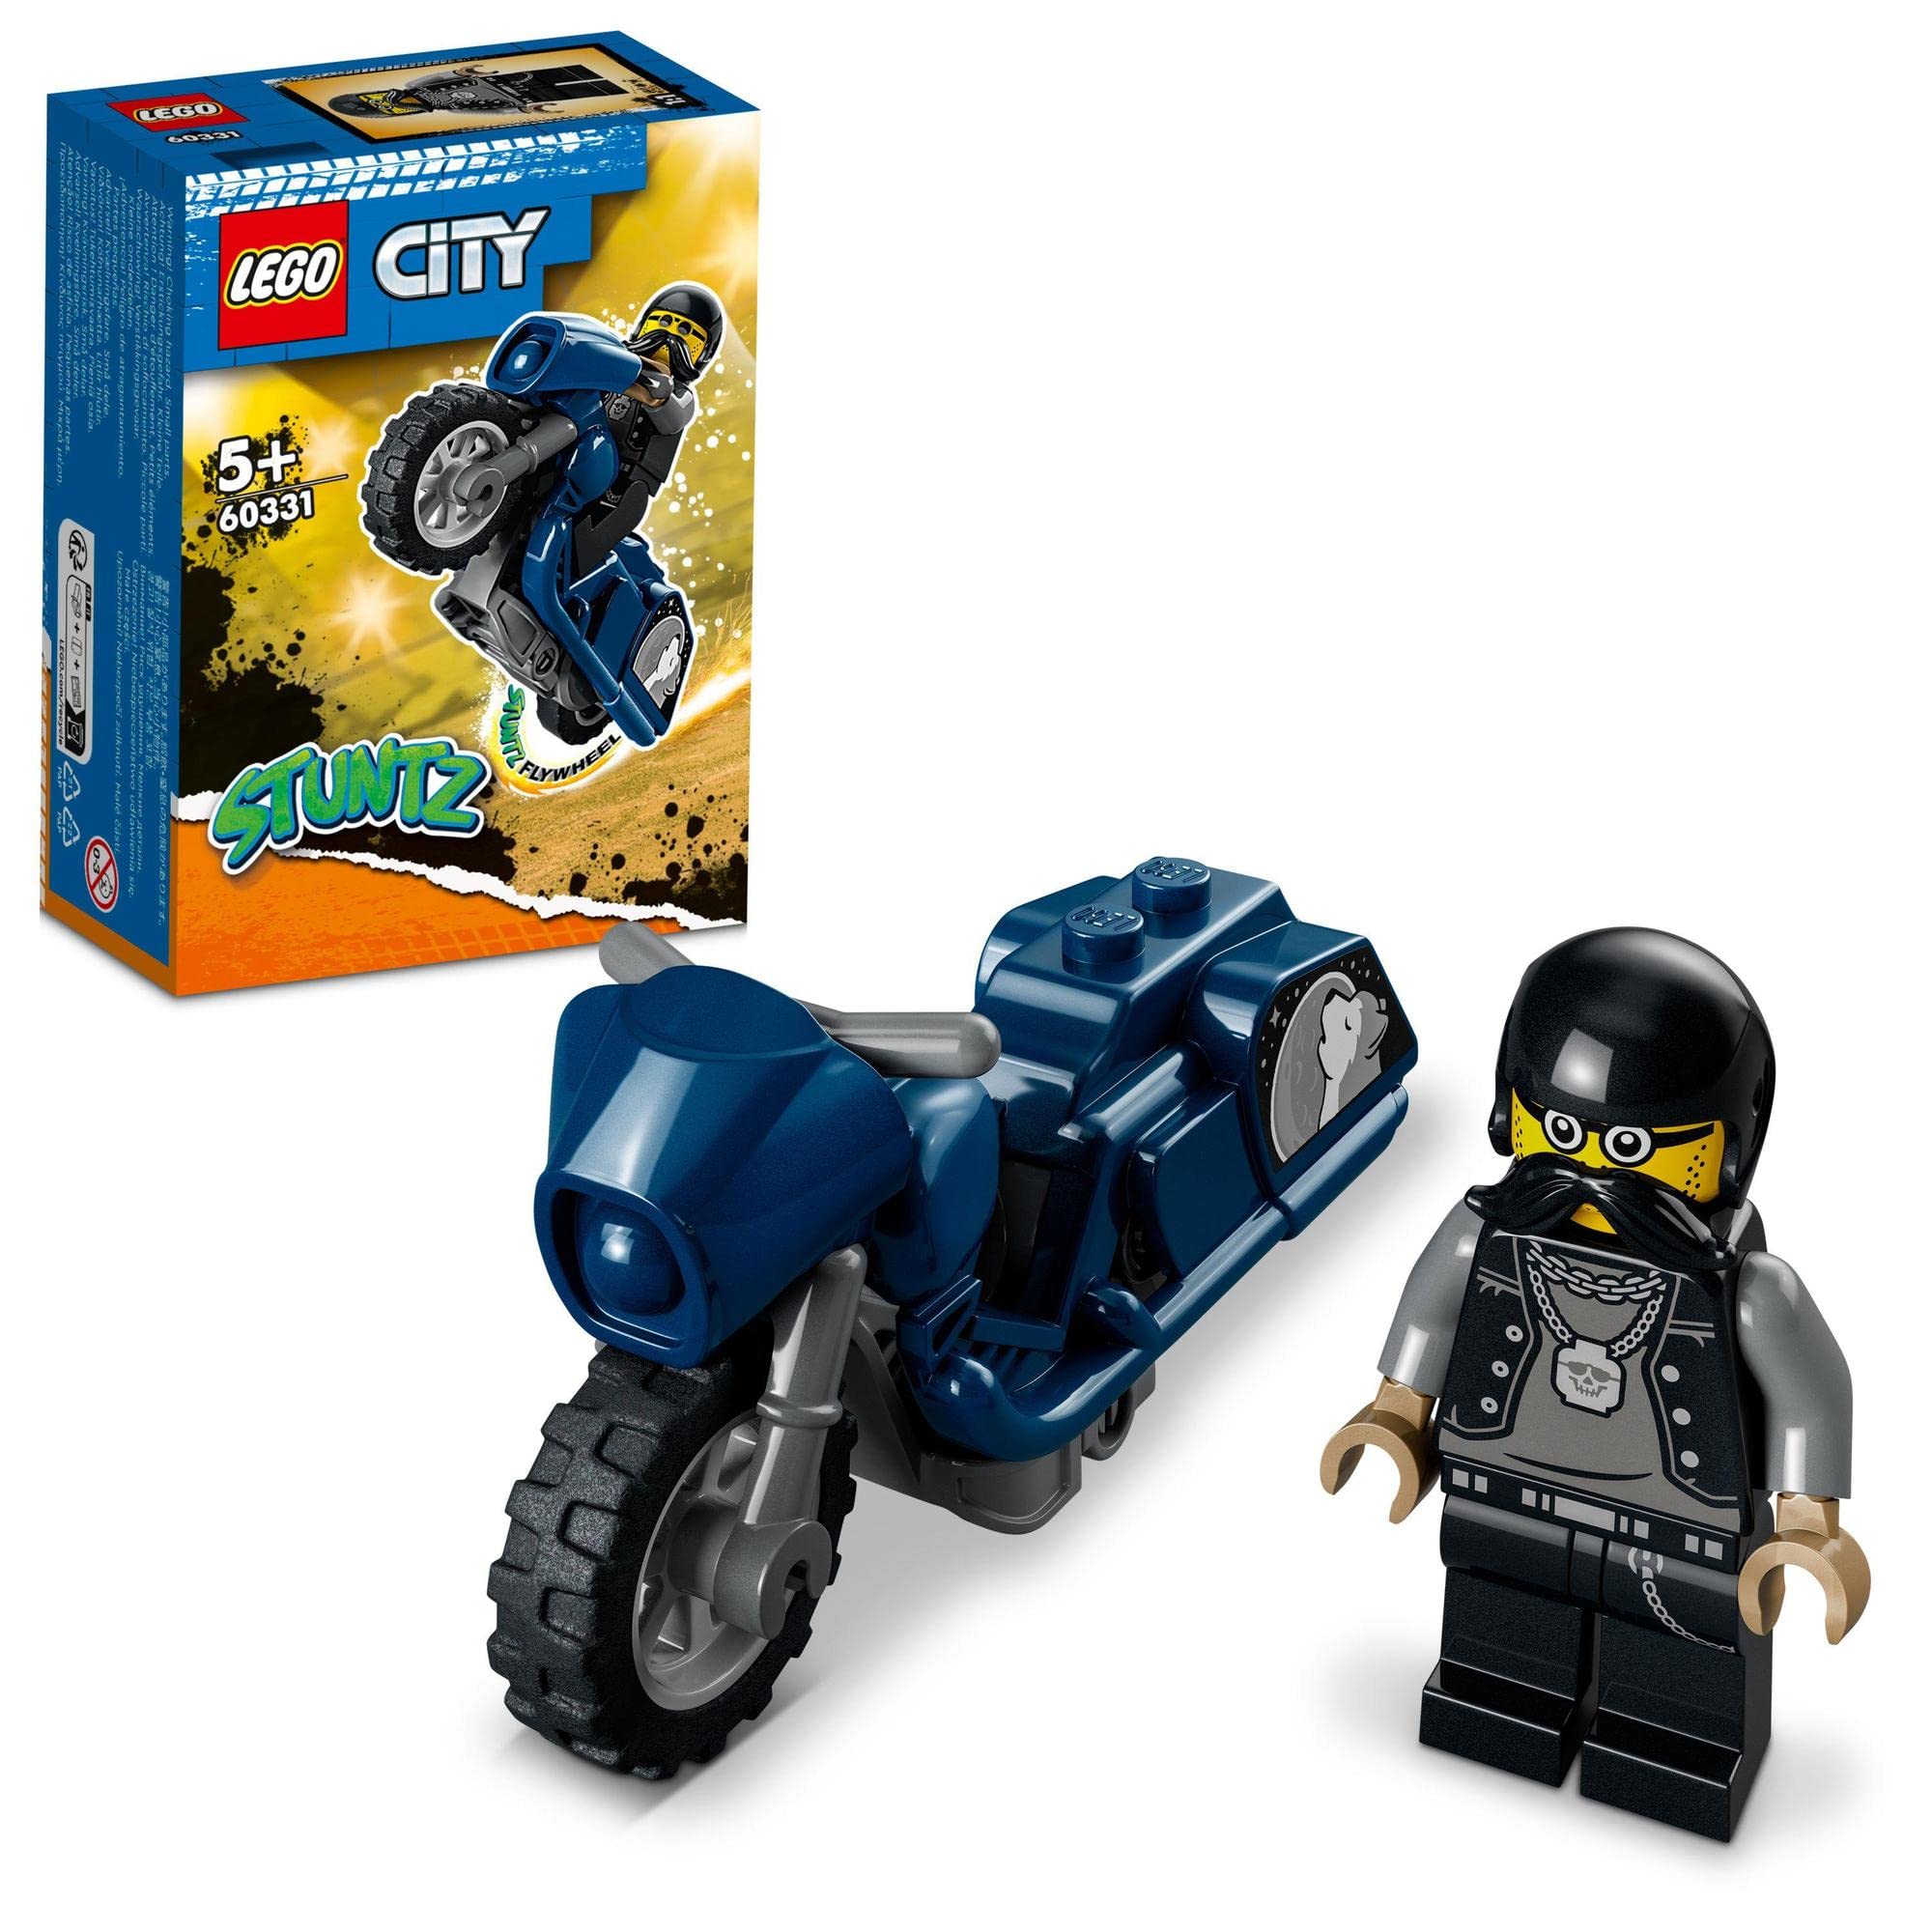 レゴ(LEGO) シティ スタントツアーバイク 60331 おもちゃ ブロック プレゼント 車 くるま 男の子 女の子 5歳以上